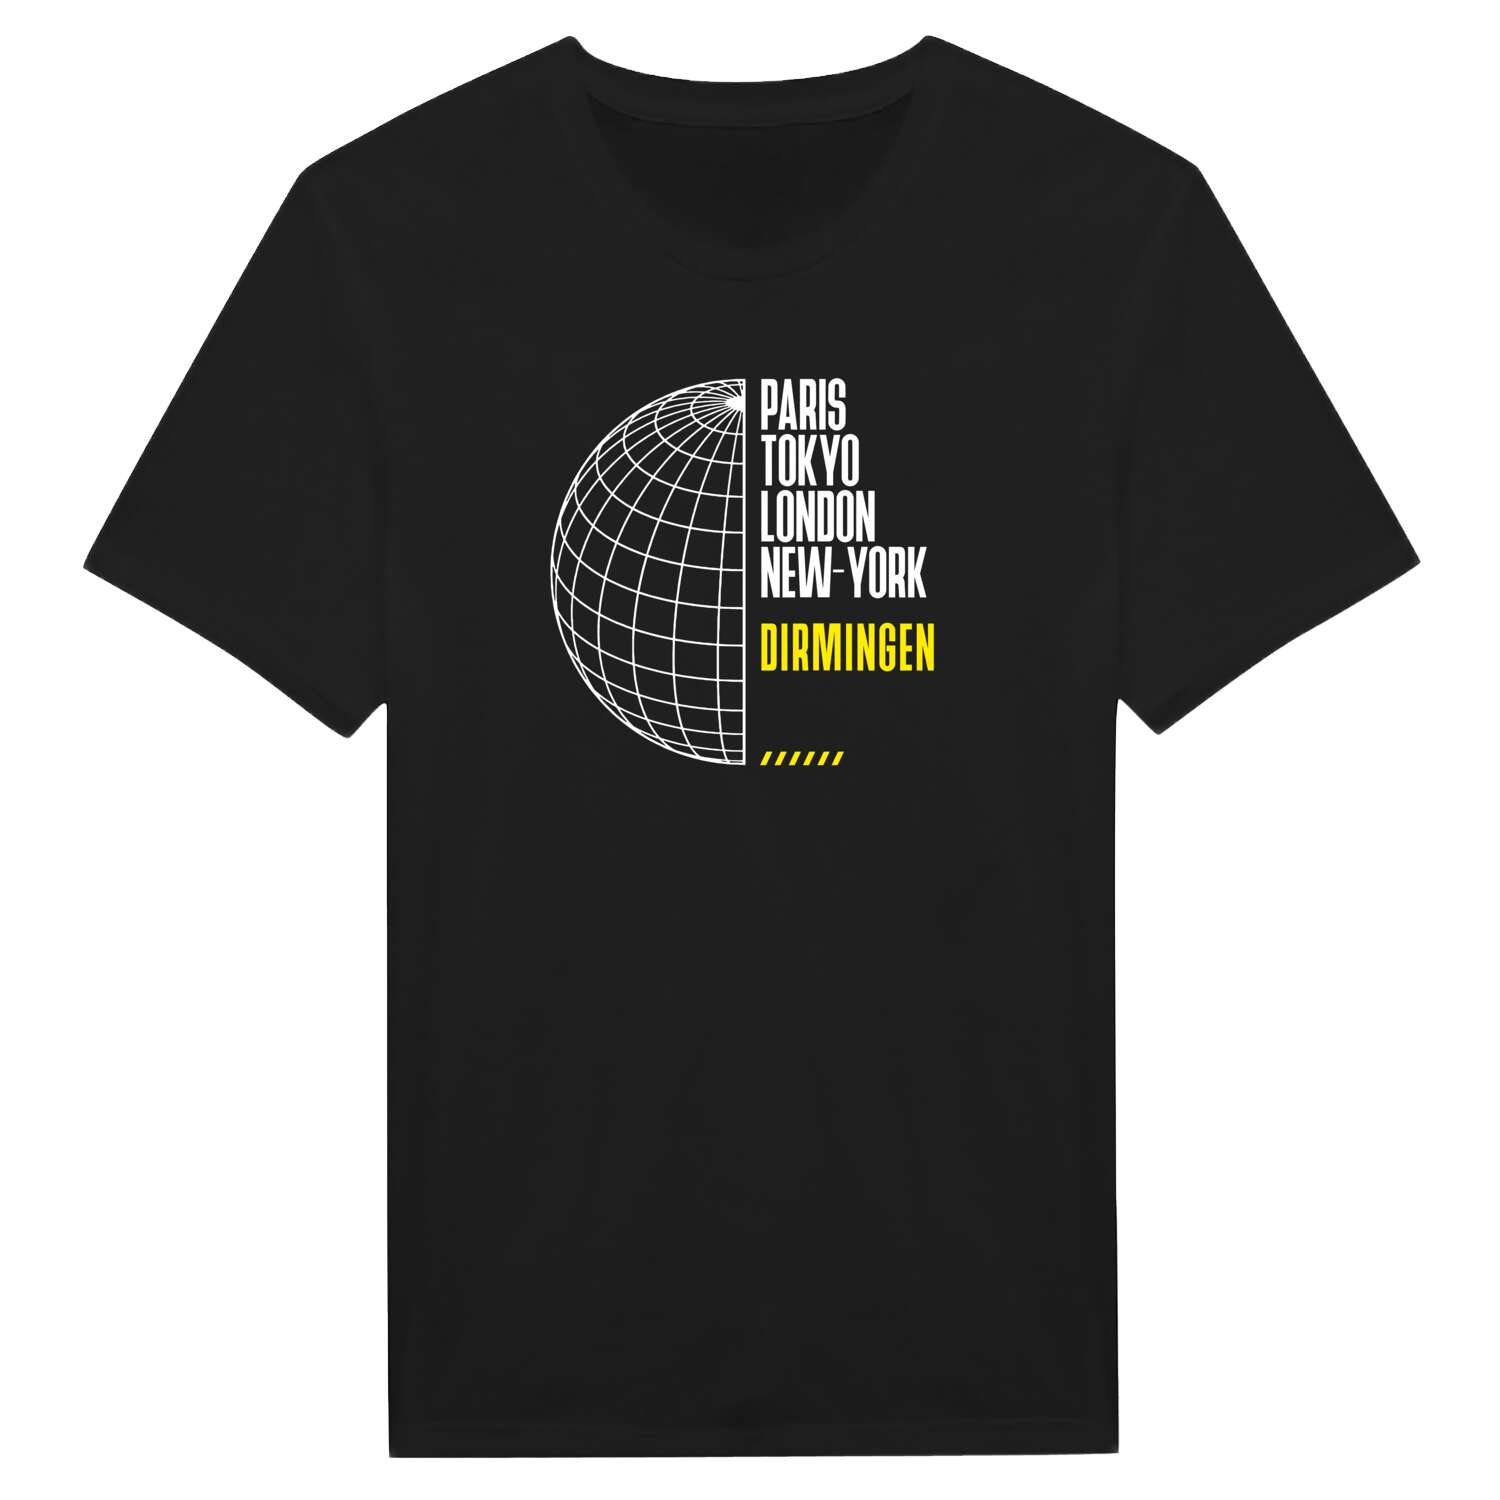 Dirmingen T-Shirt »Paris Tokyo London«